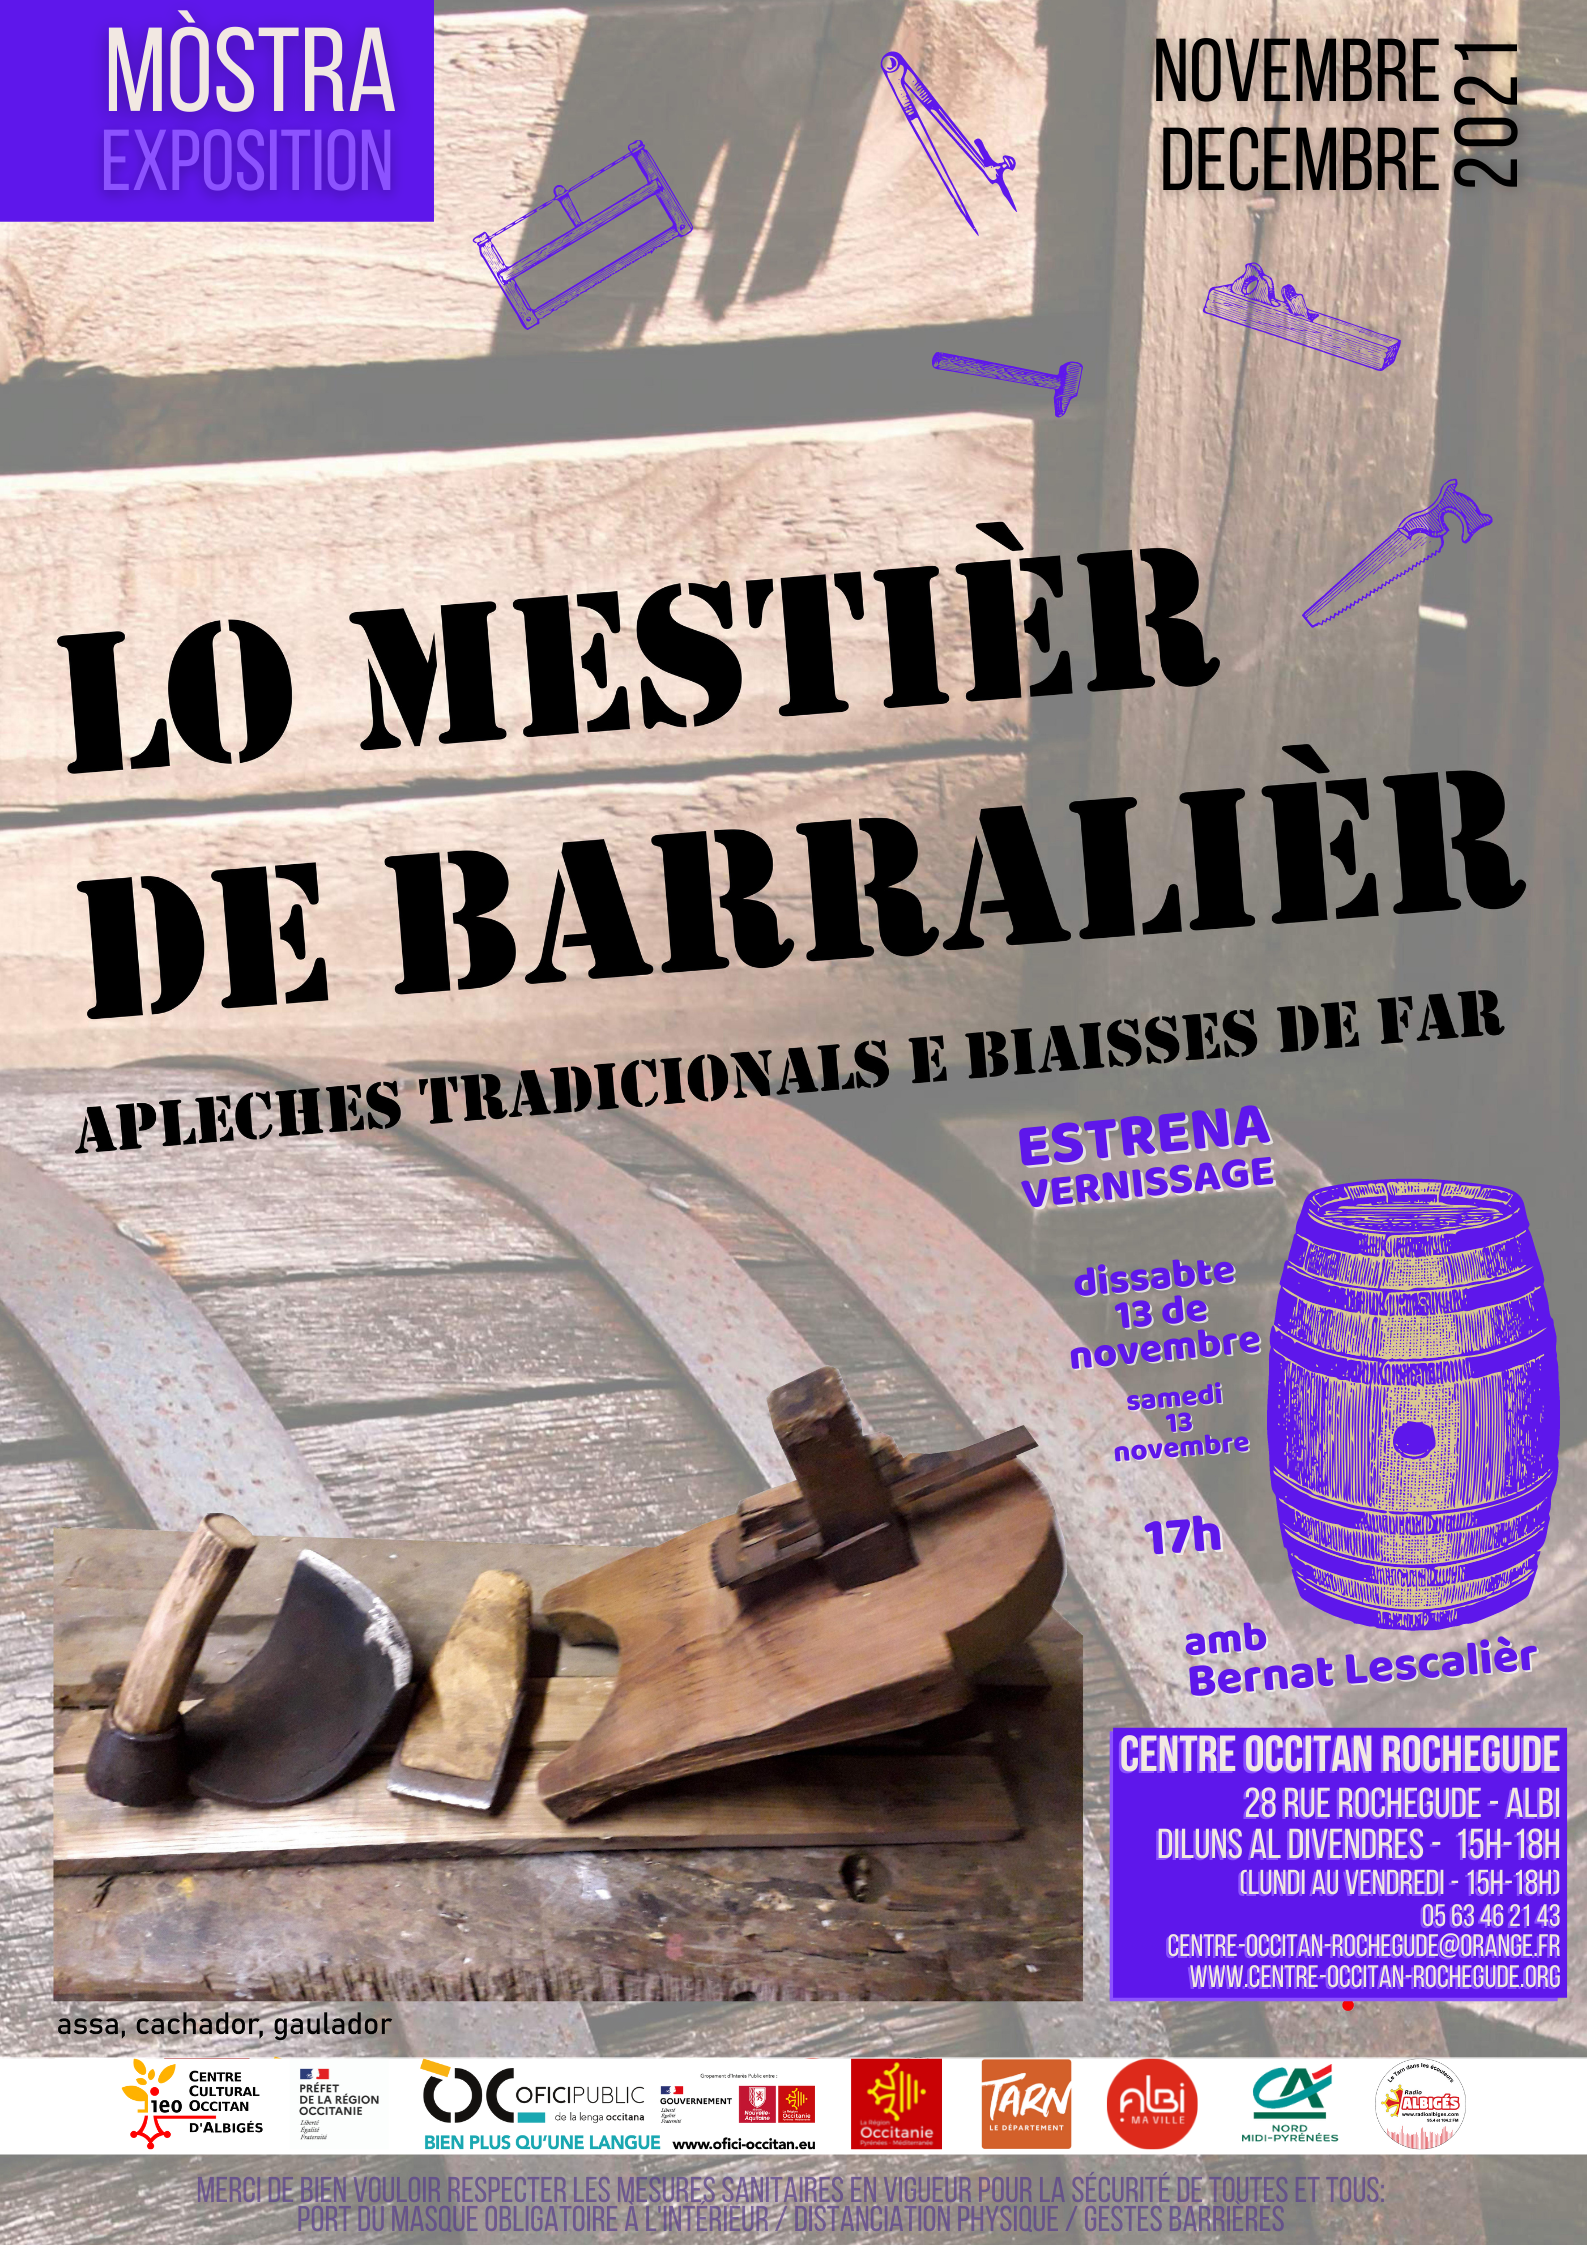 You are currently viewing Estrena de la mòstra « Lo mestièr de barralièr » amb Bernat Lescalièr